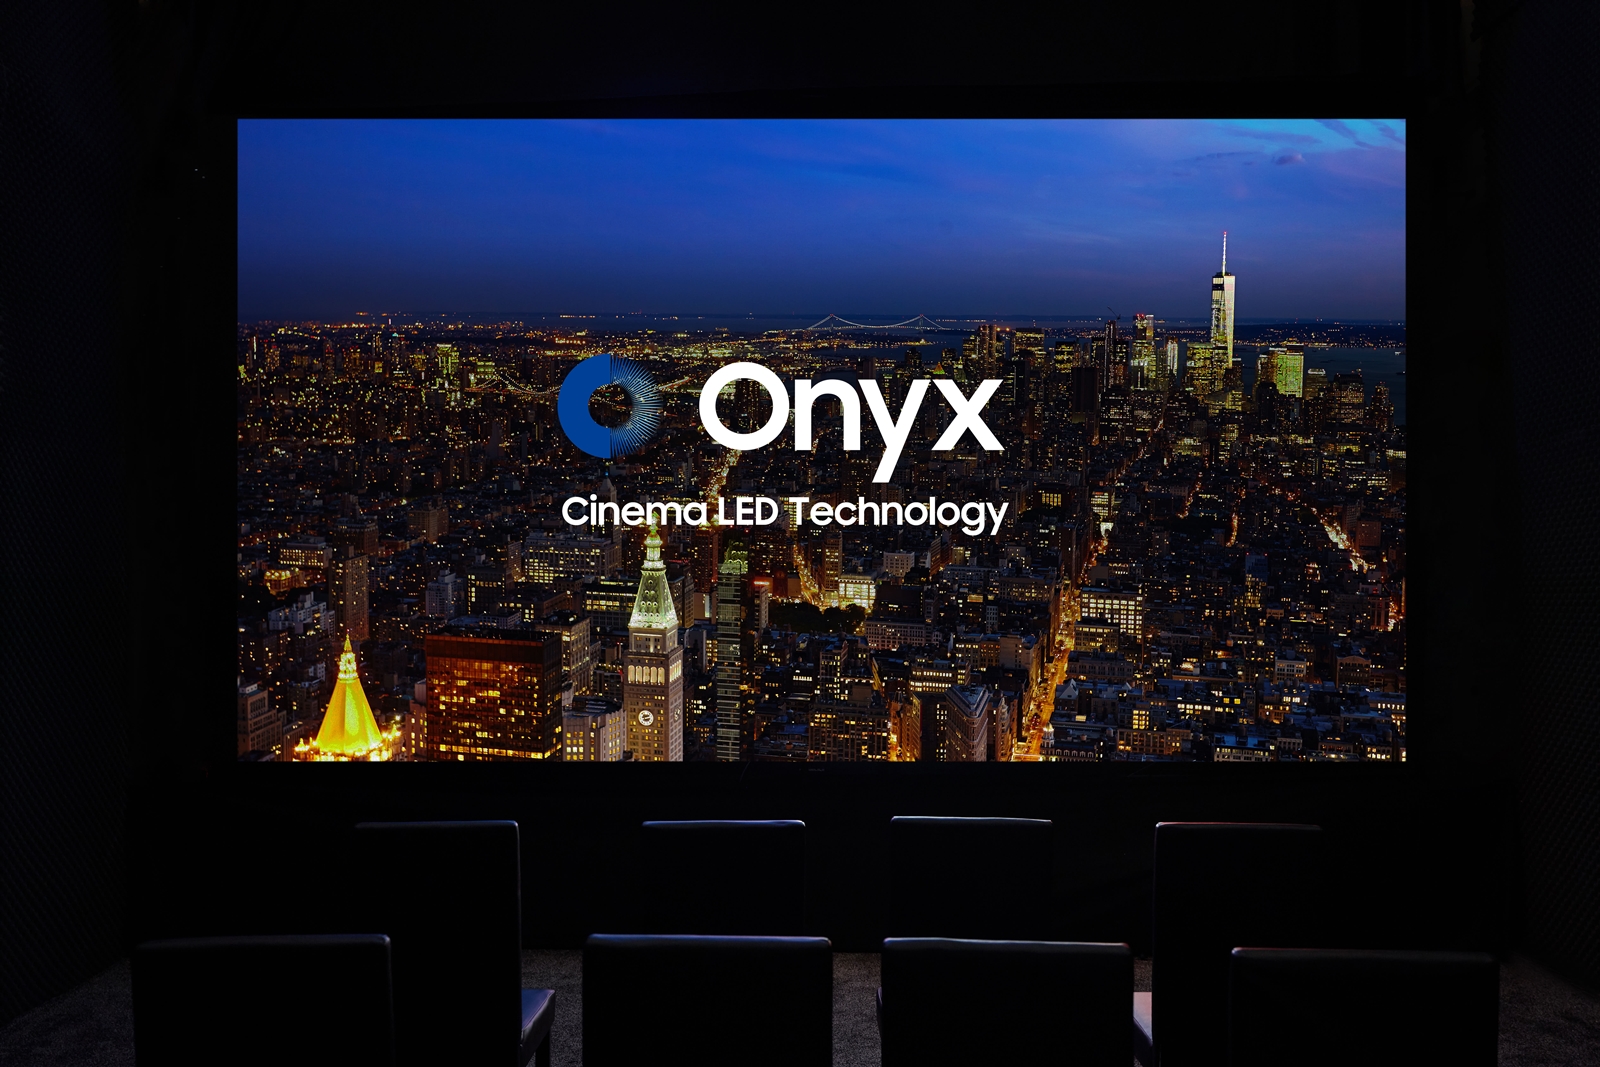 تركيب أول شاشة ONYX Cinema LED في فوكس سينما دبي